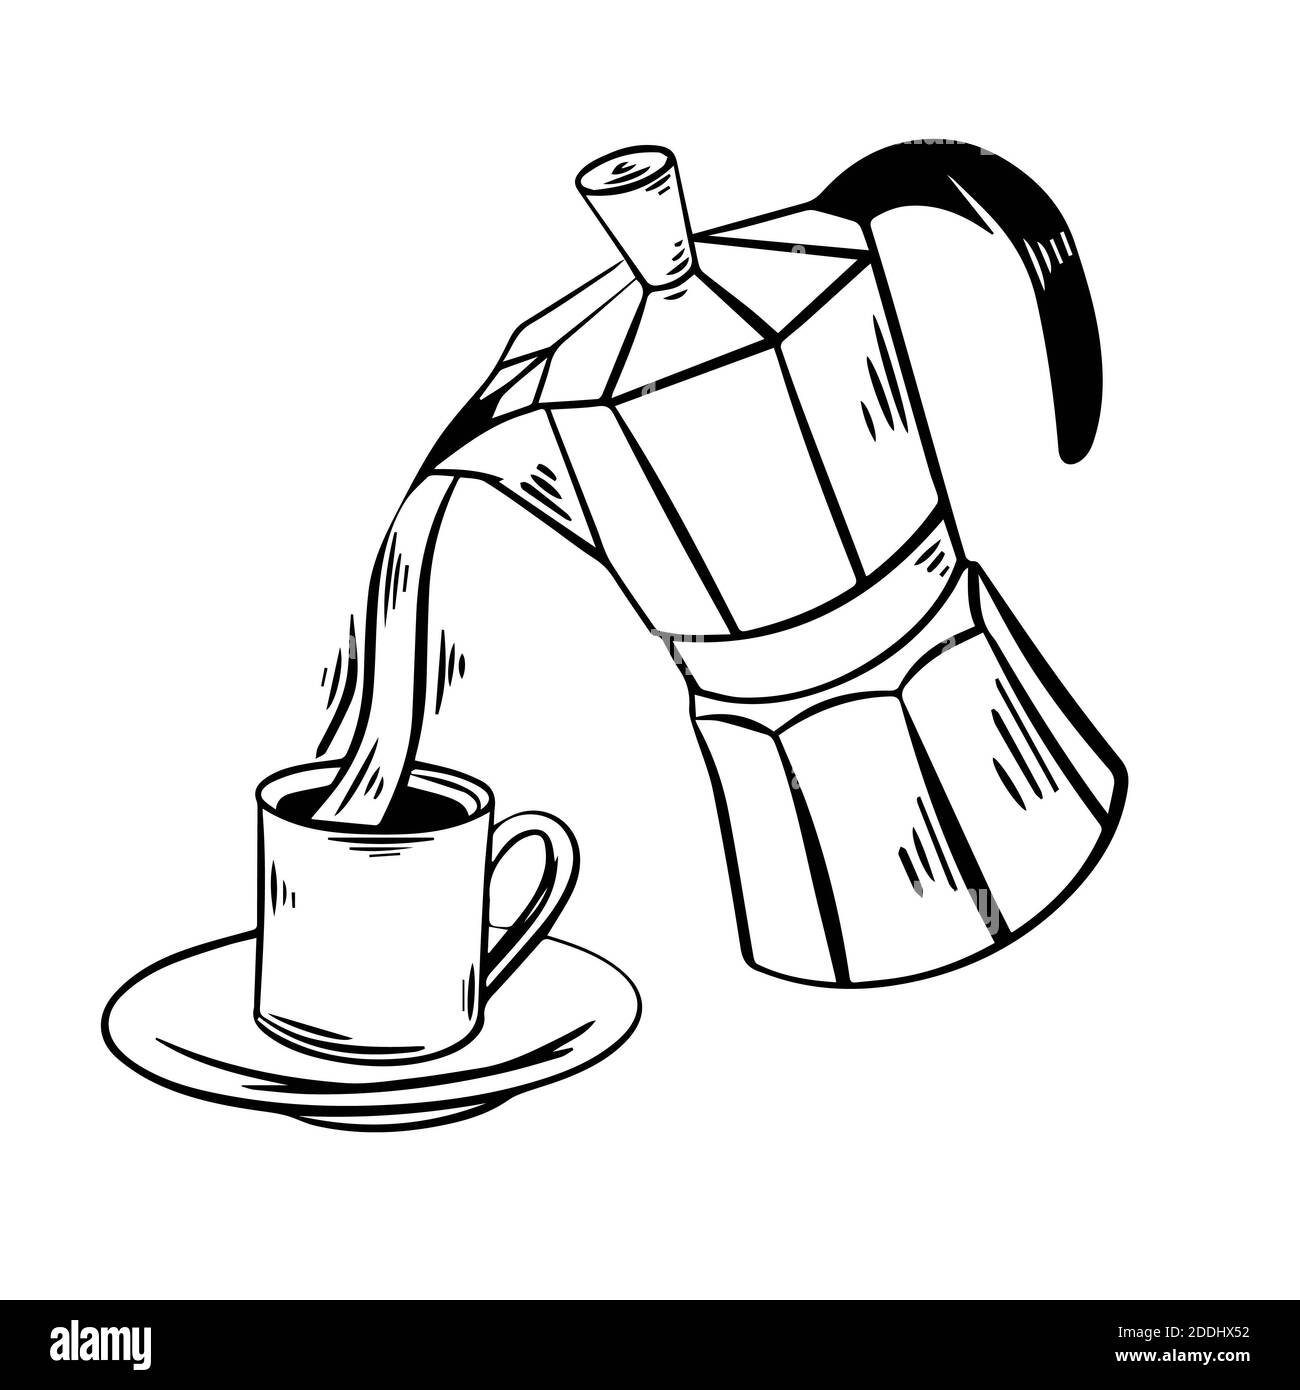 Il caffè versato da una moka volante in una tazza disegnata a mano illustrazione vettoriale. Moka schizzo con tazza di caffè su sfondo bianco. Cibo, caffè, caffè male Foto Stock